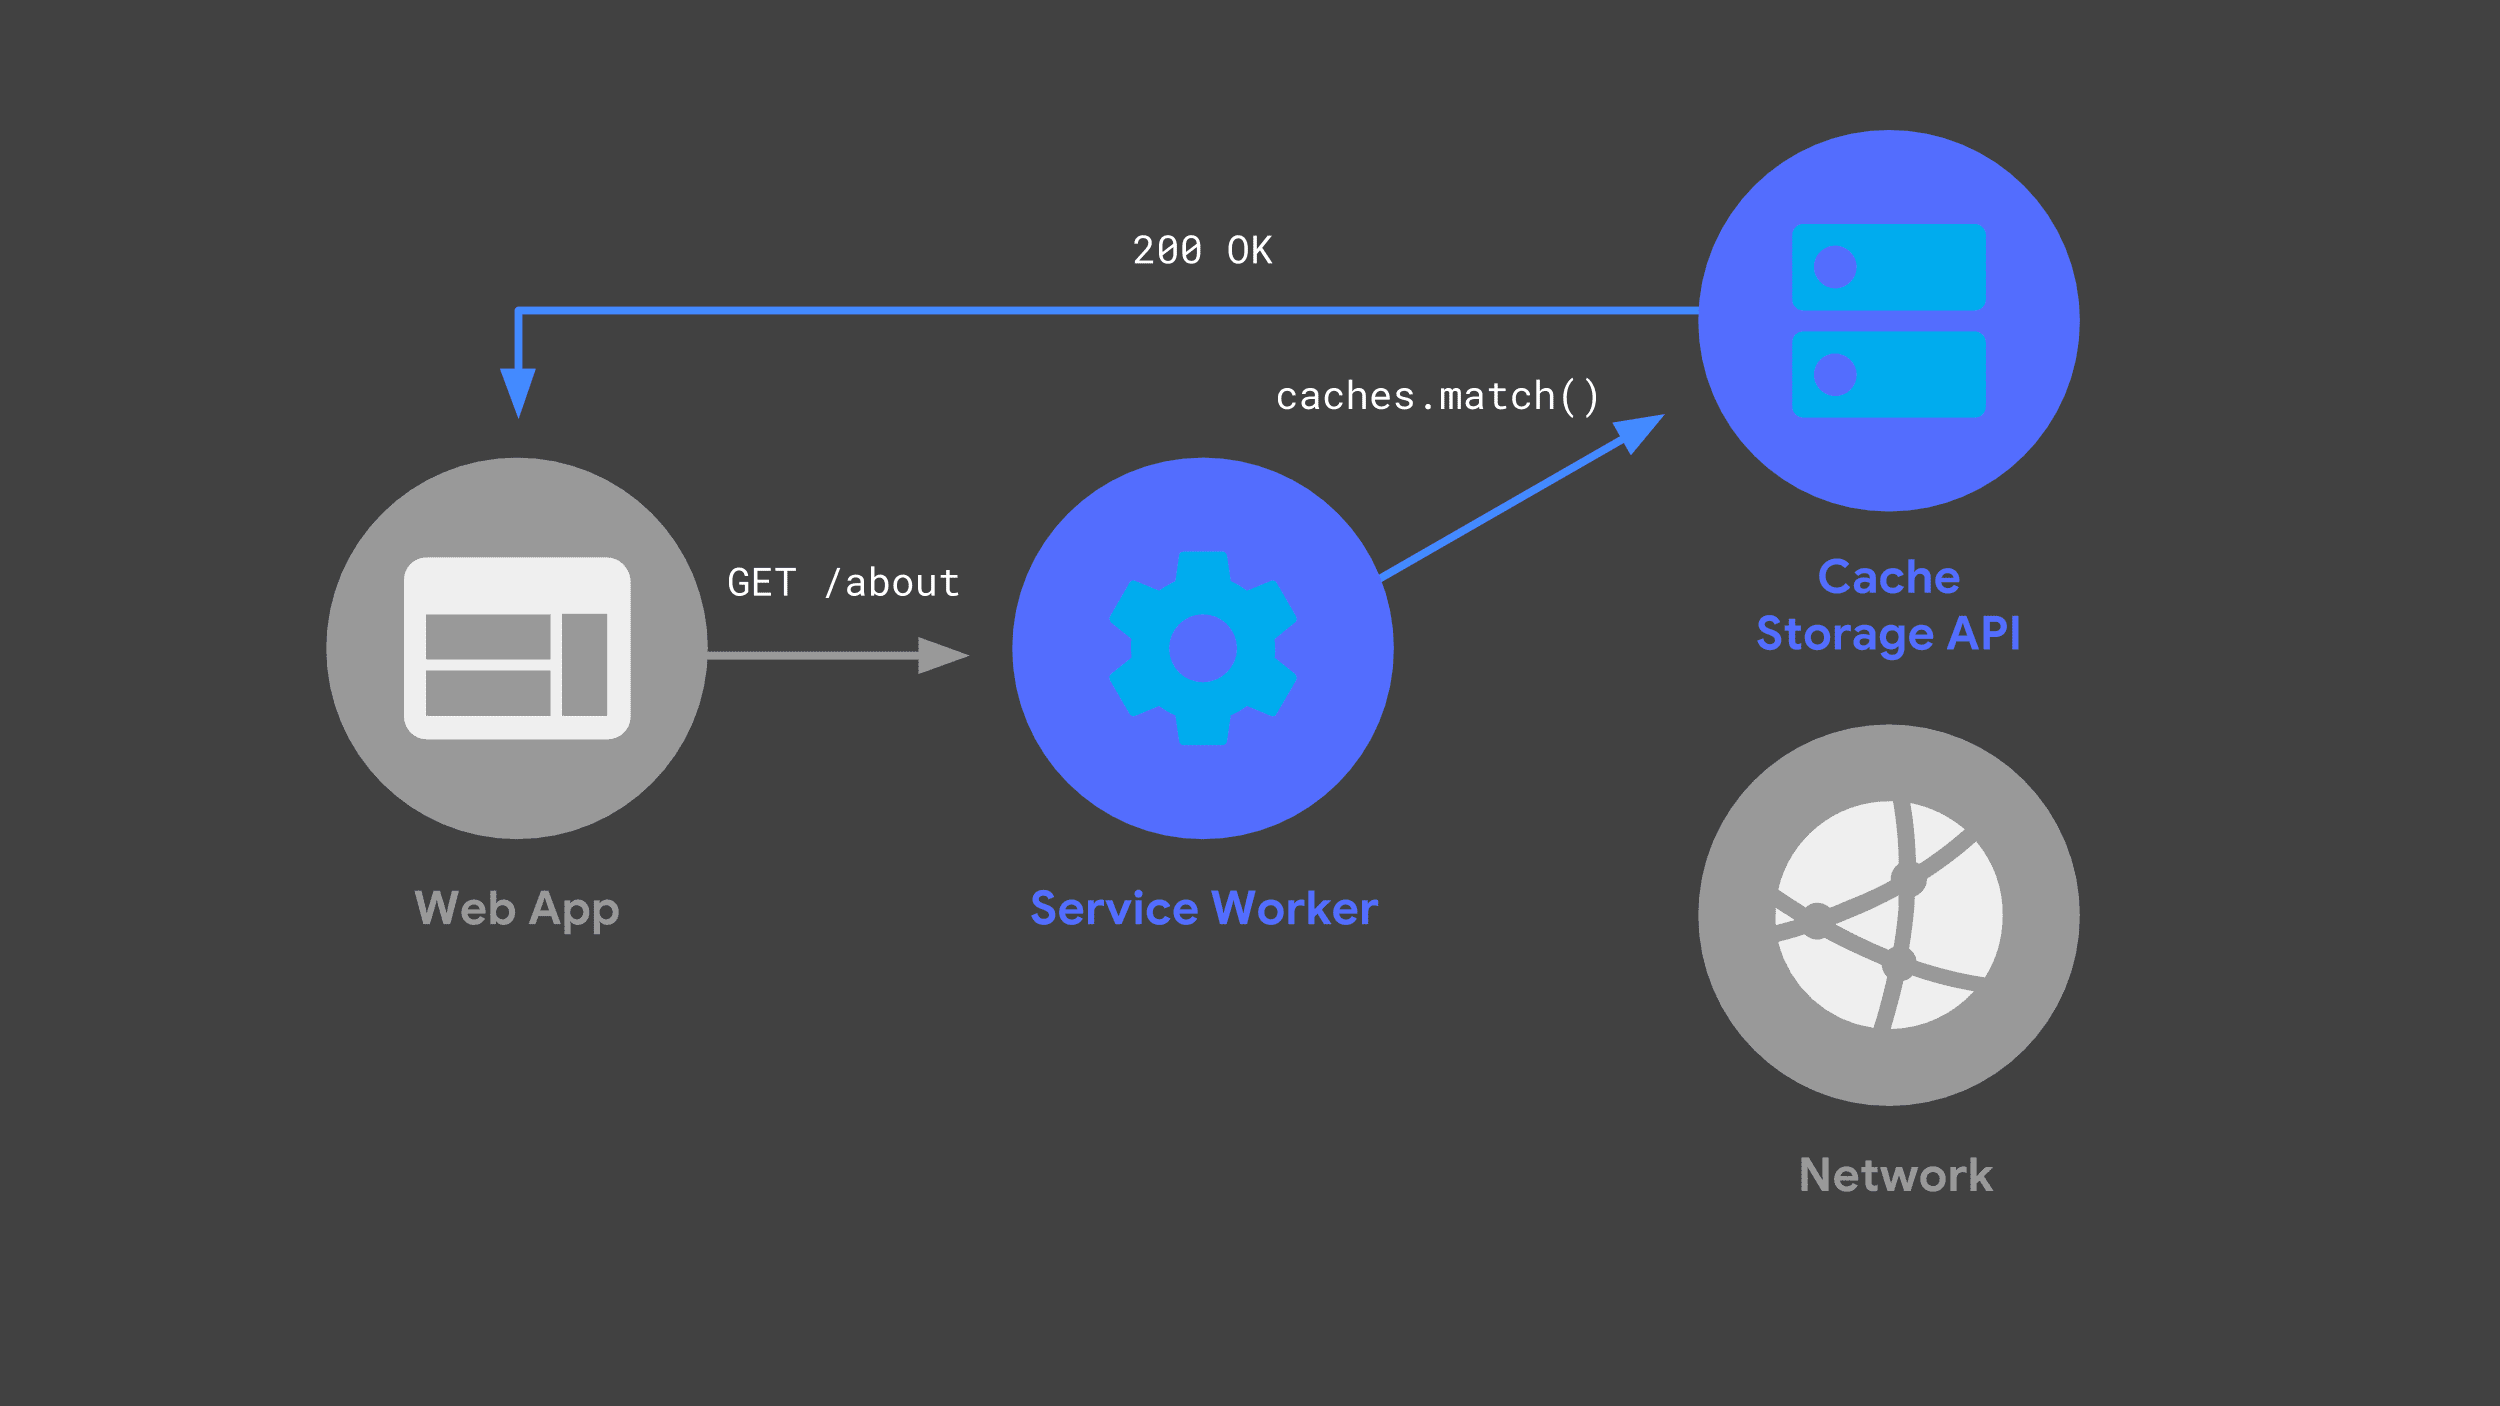 קובץ שירות (service worker) שמשתמש ב-API של אחסון מטמון כדי להגיב ועוקף את הרשת.